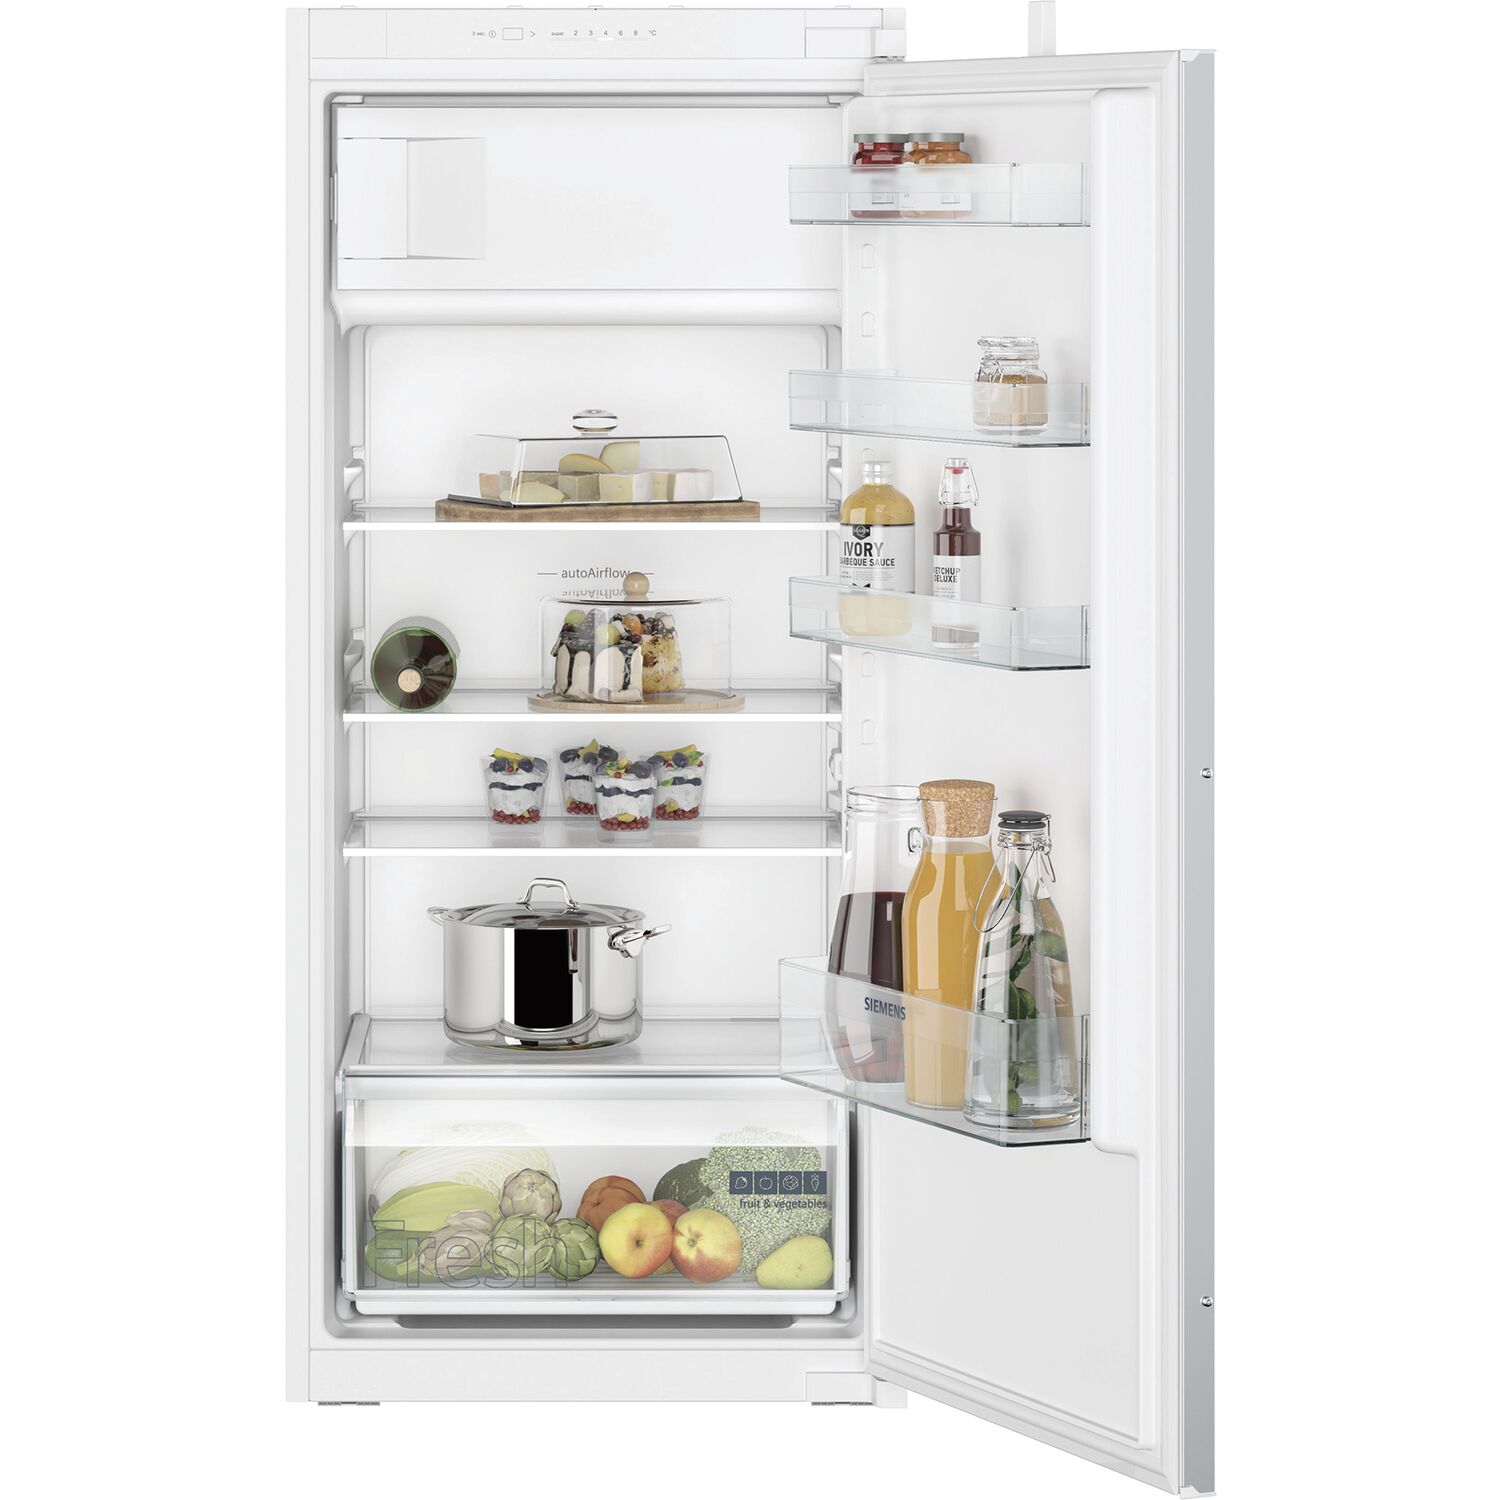 SIEMENS Einbau-Kühlschrank KI42LNSE0 mit Gefrierfach, 1220 mm